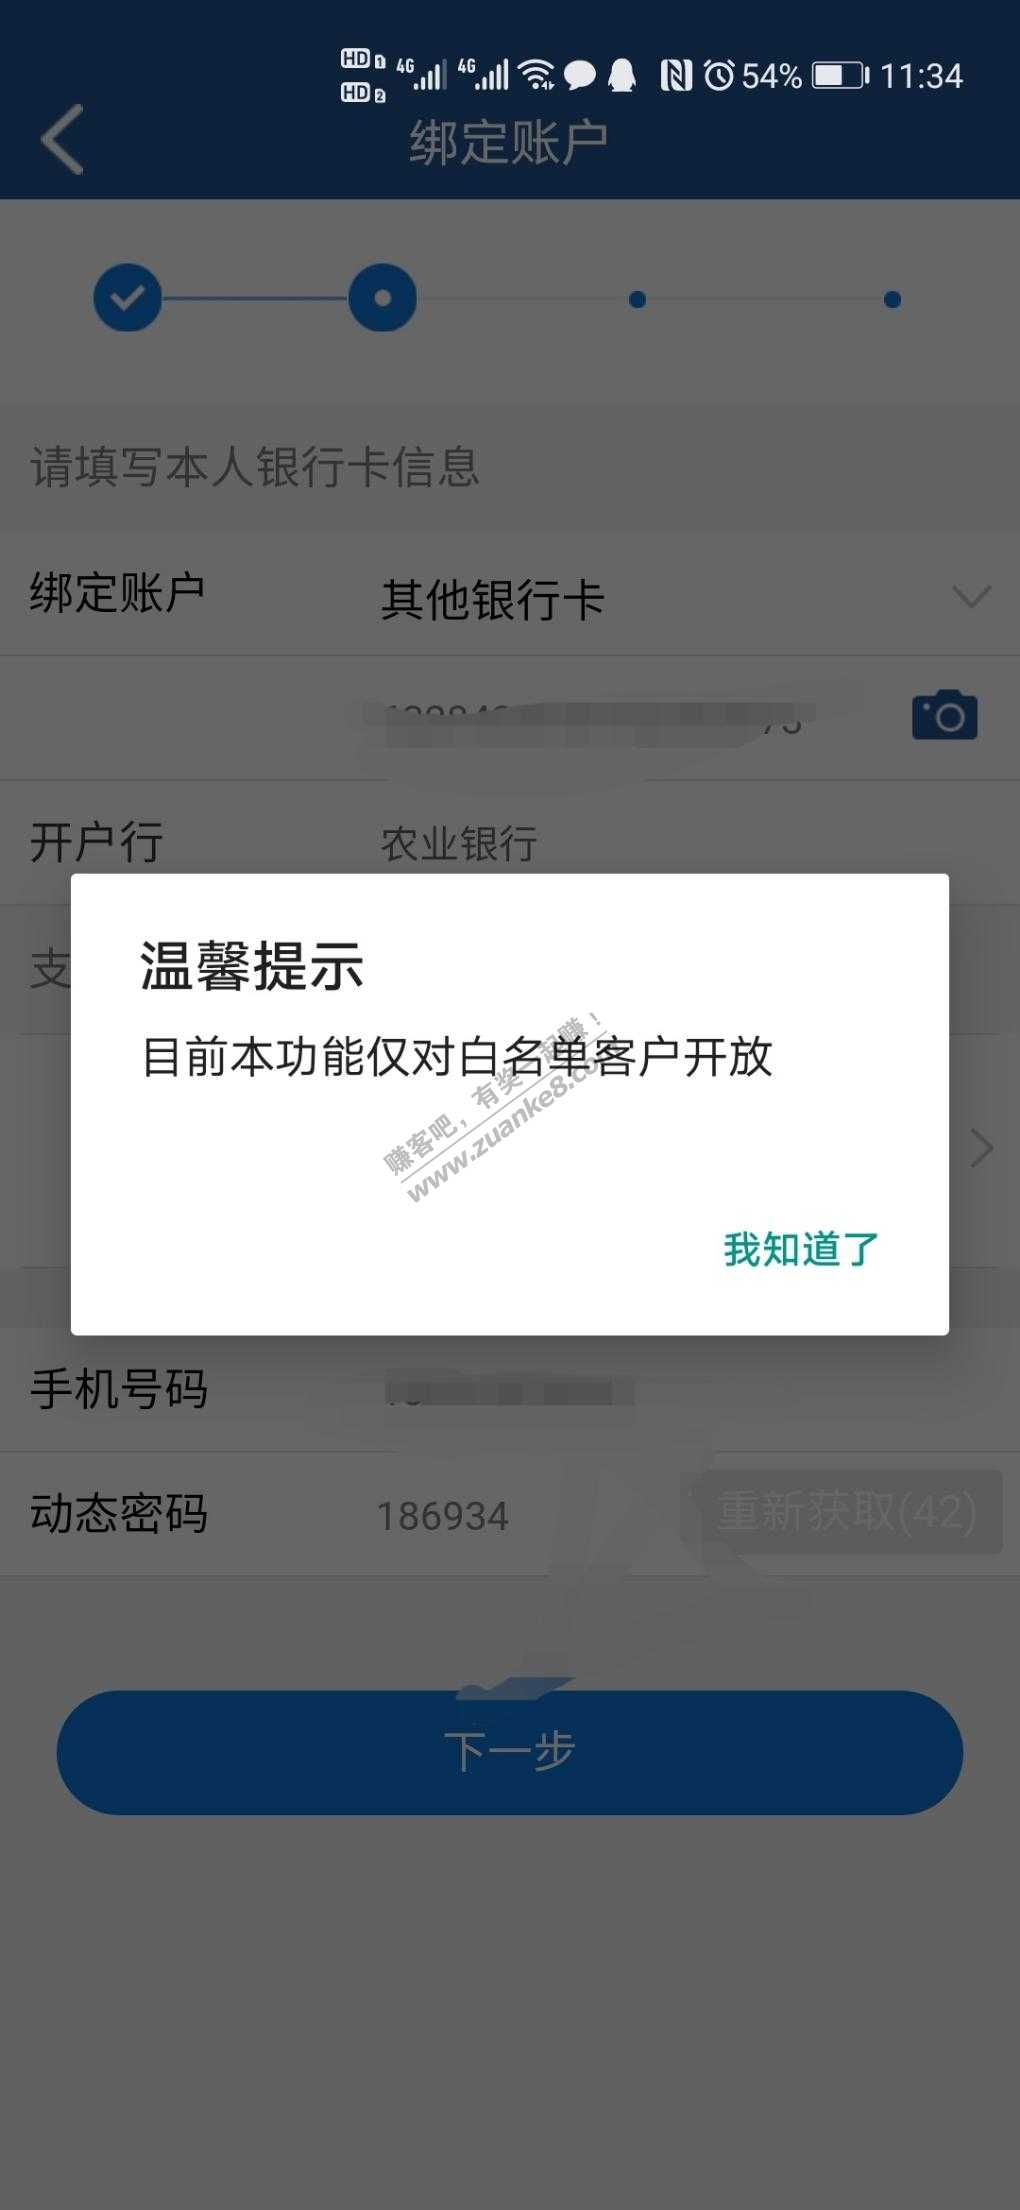 上海银行开卡显示权对白名单用户！-惠小助(52huixz.com)